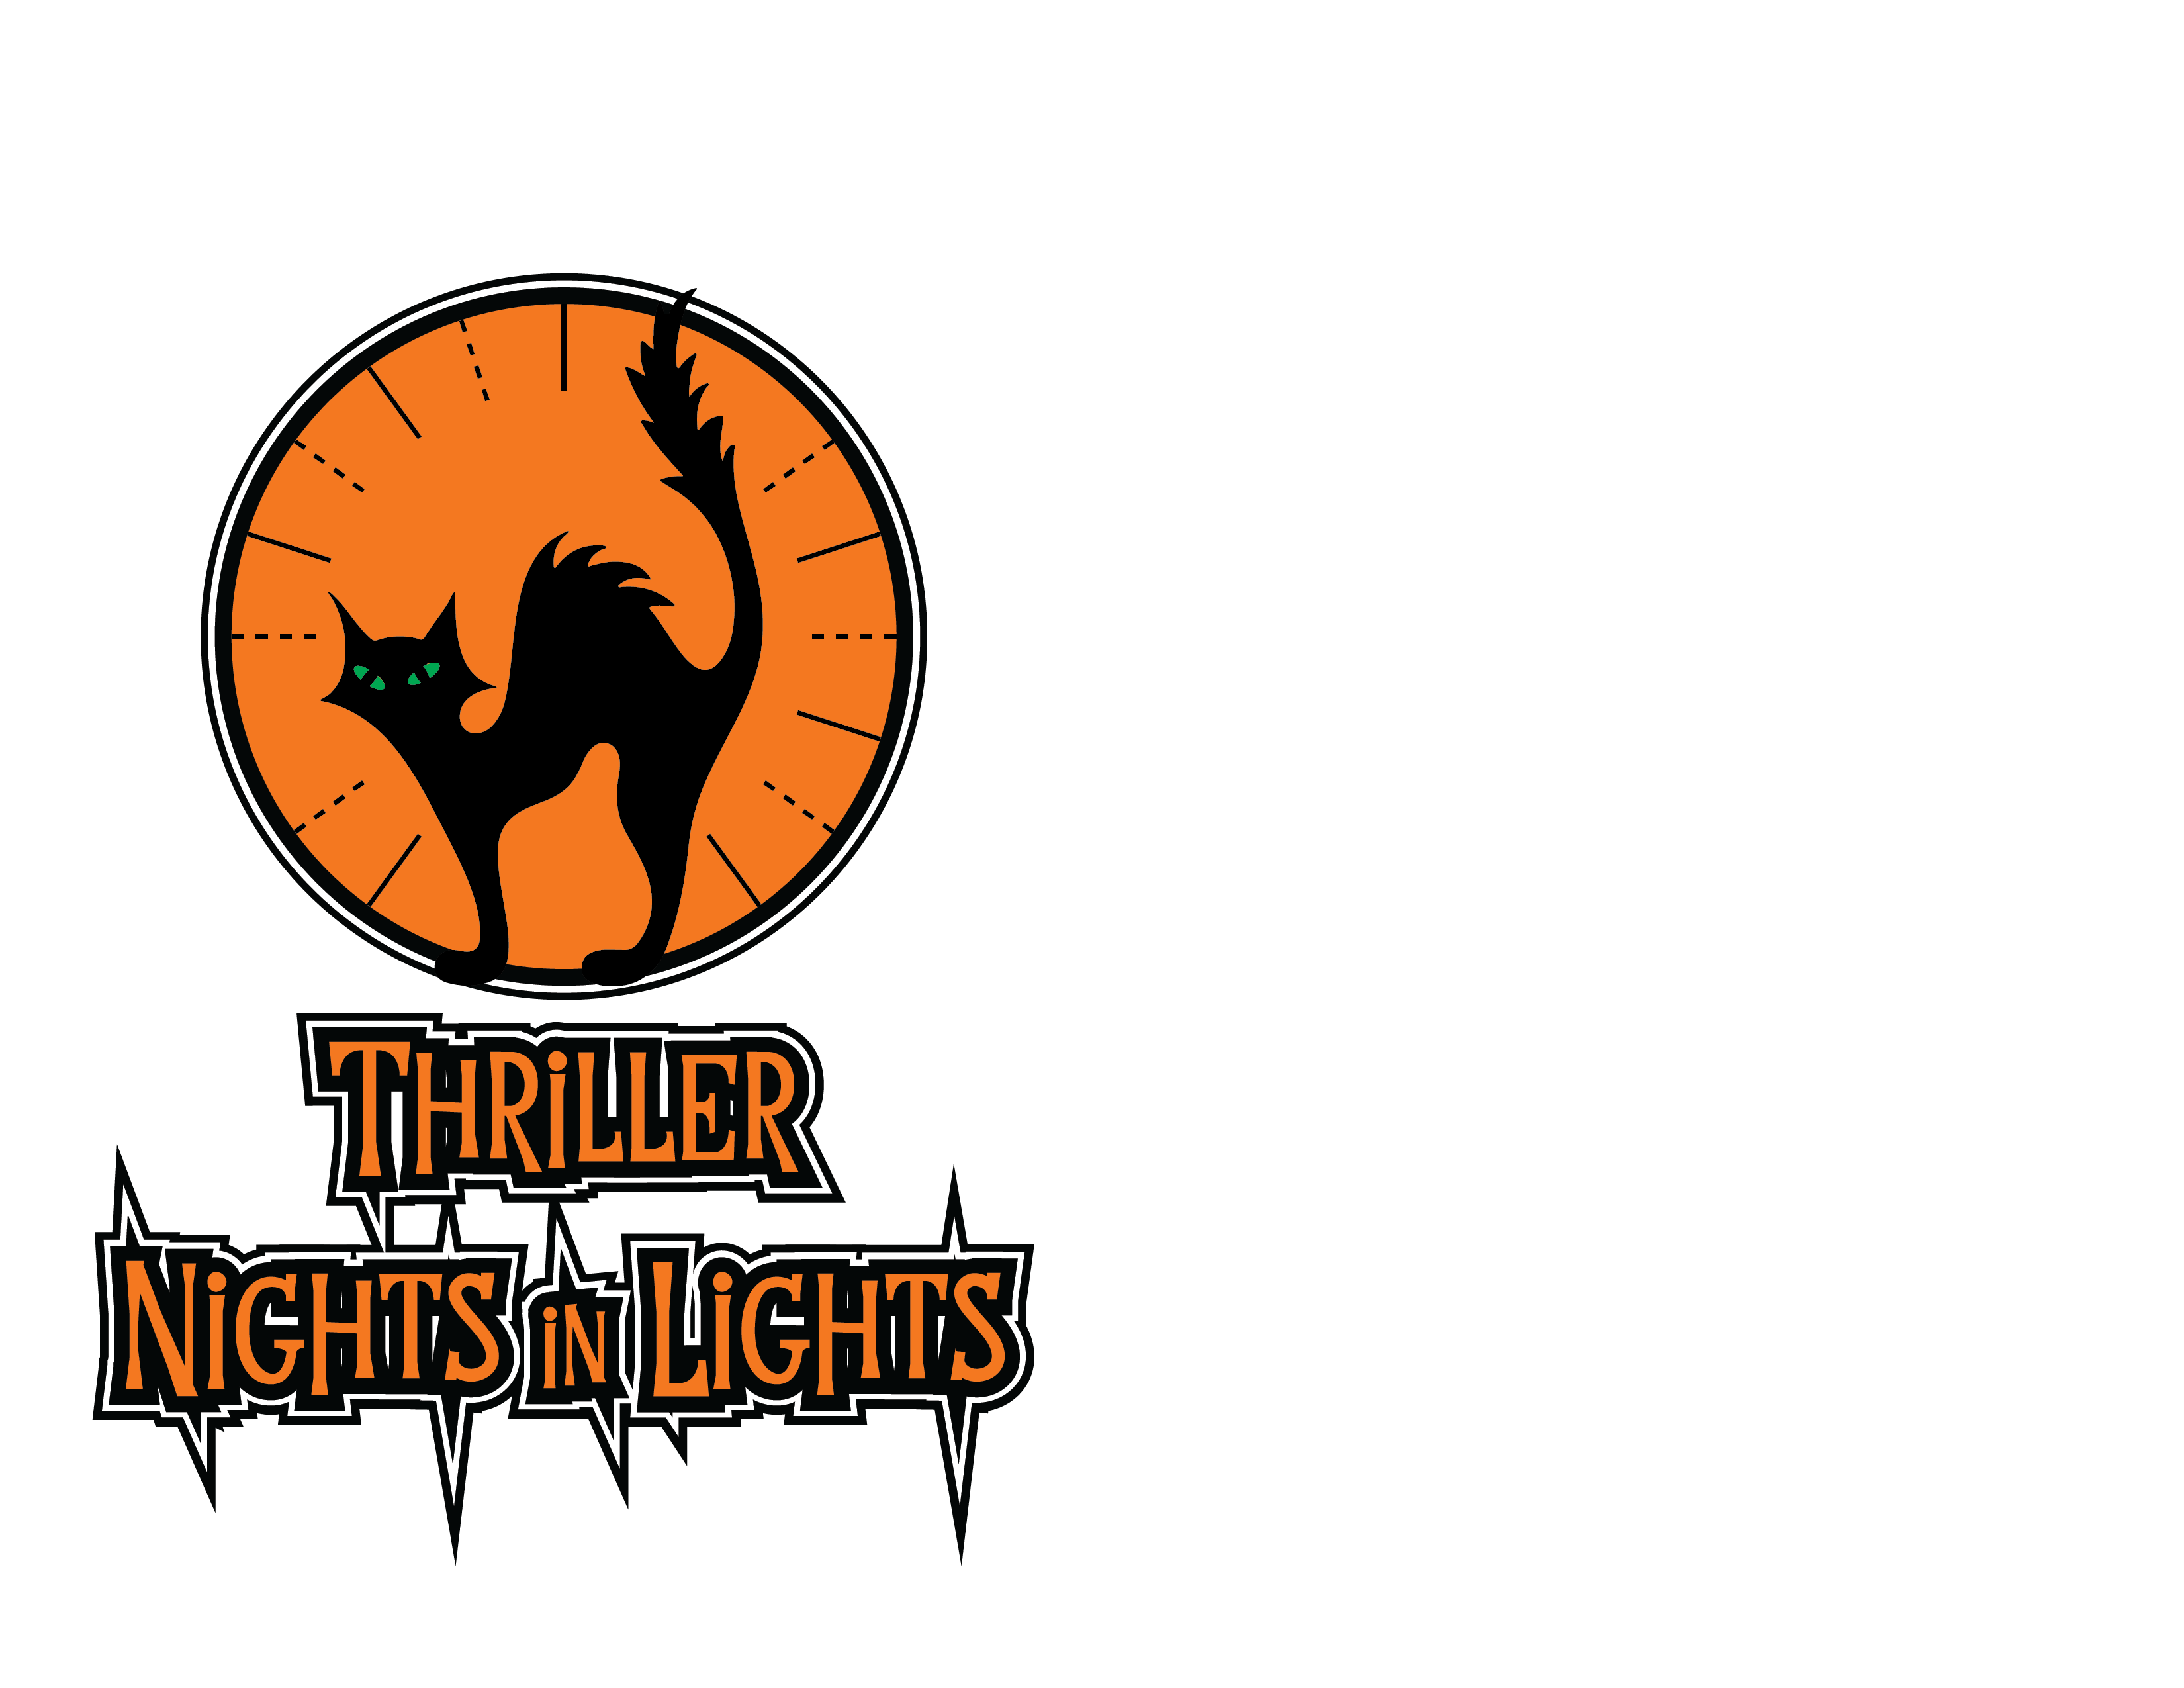 Nights in Lights Logos